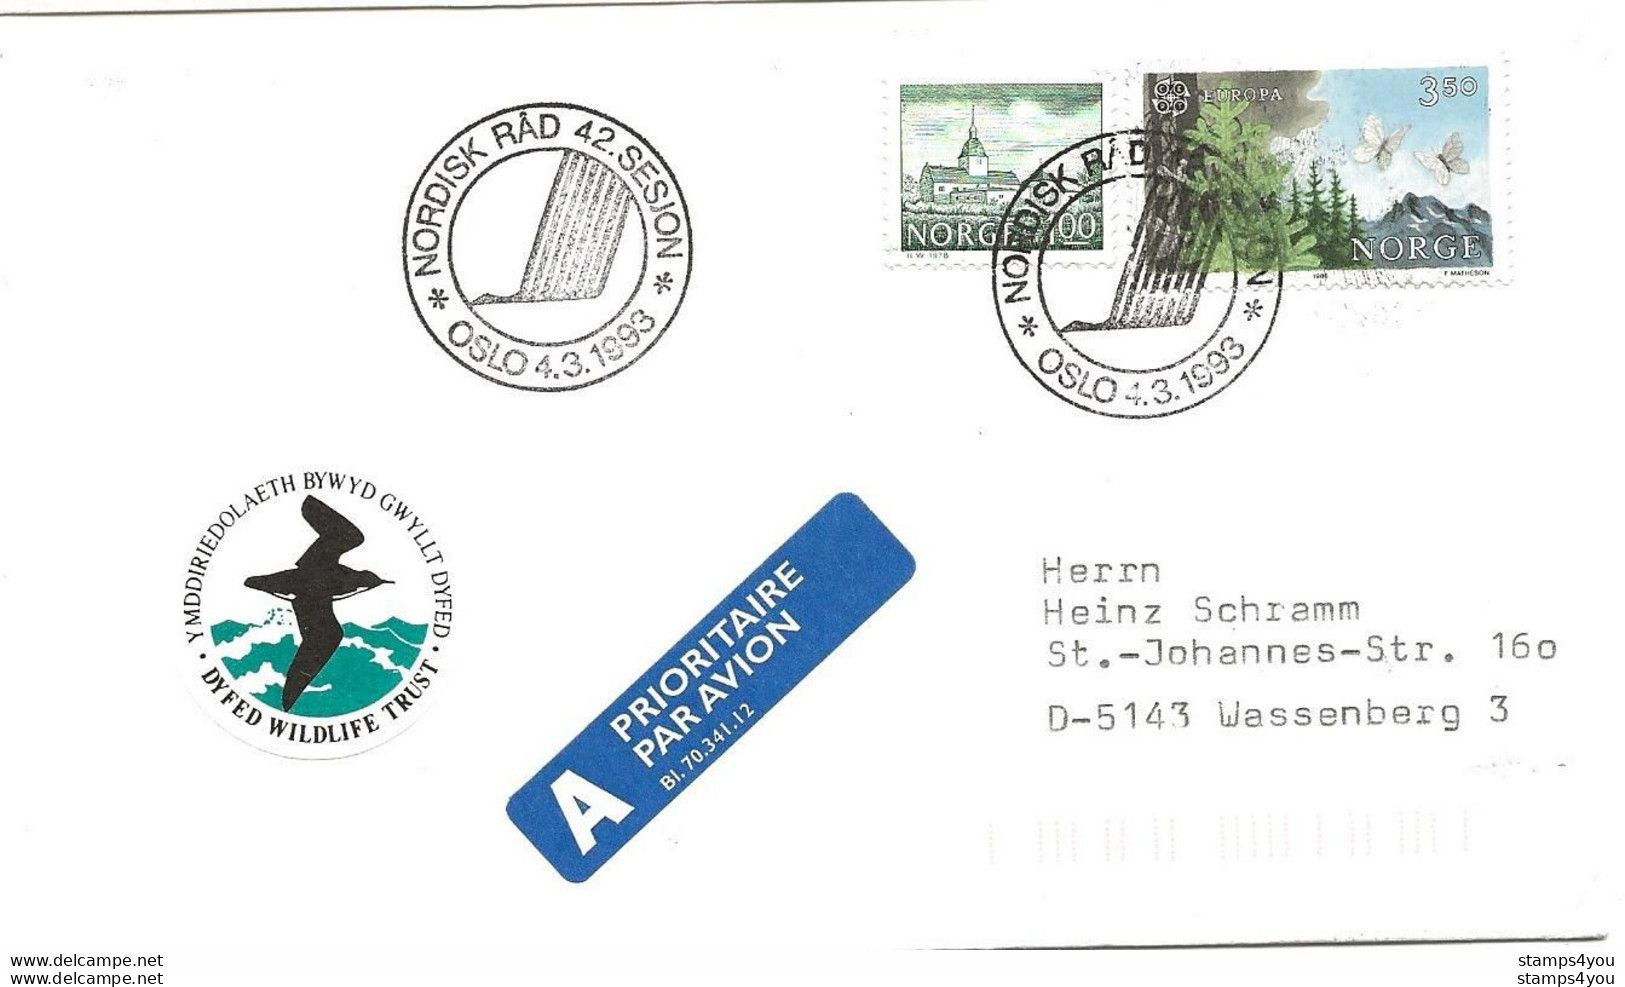 289 - 12 - Enveloppe Avec Oblit Spéciale De Oslo "Nordisk Rad 42 Sesion 1993" - Covers & Documents